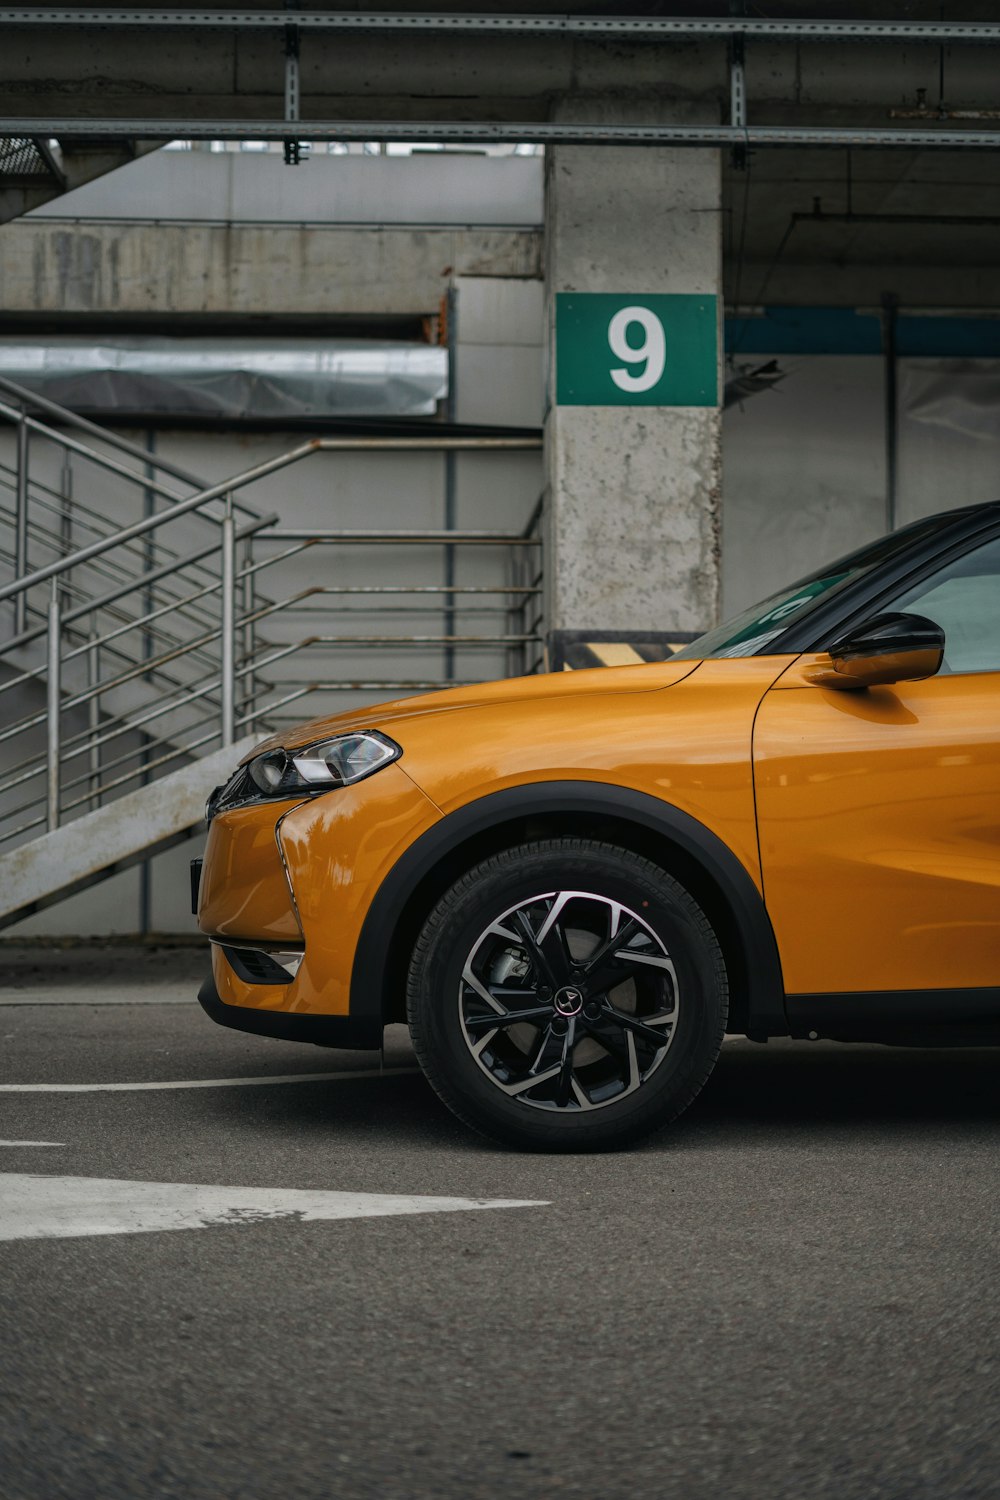 an orange car parked in a parking garage